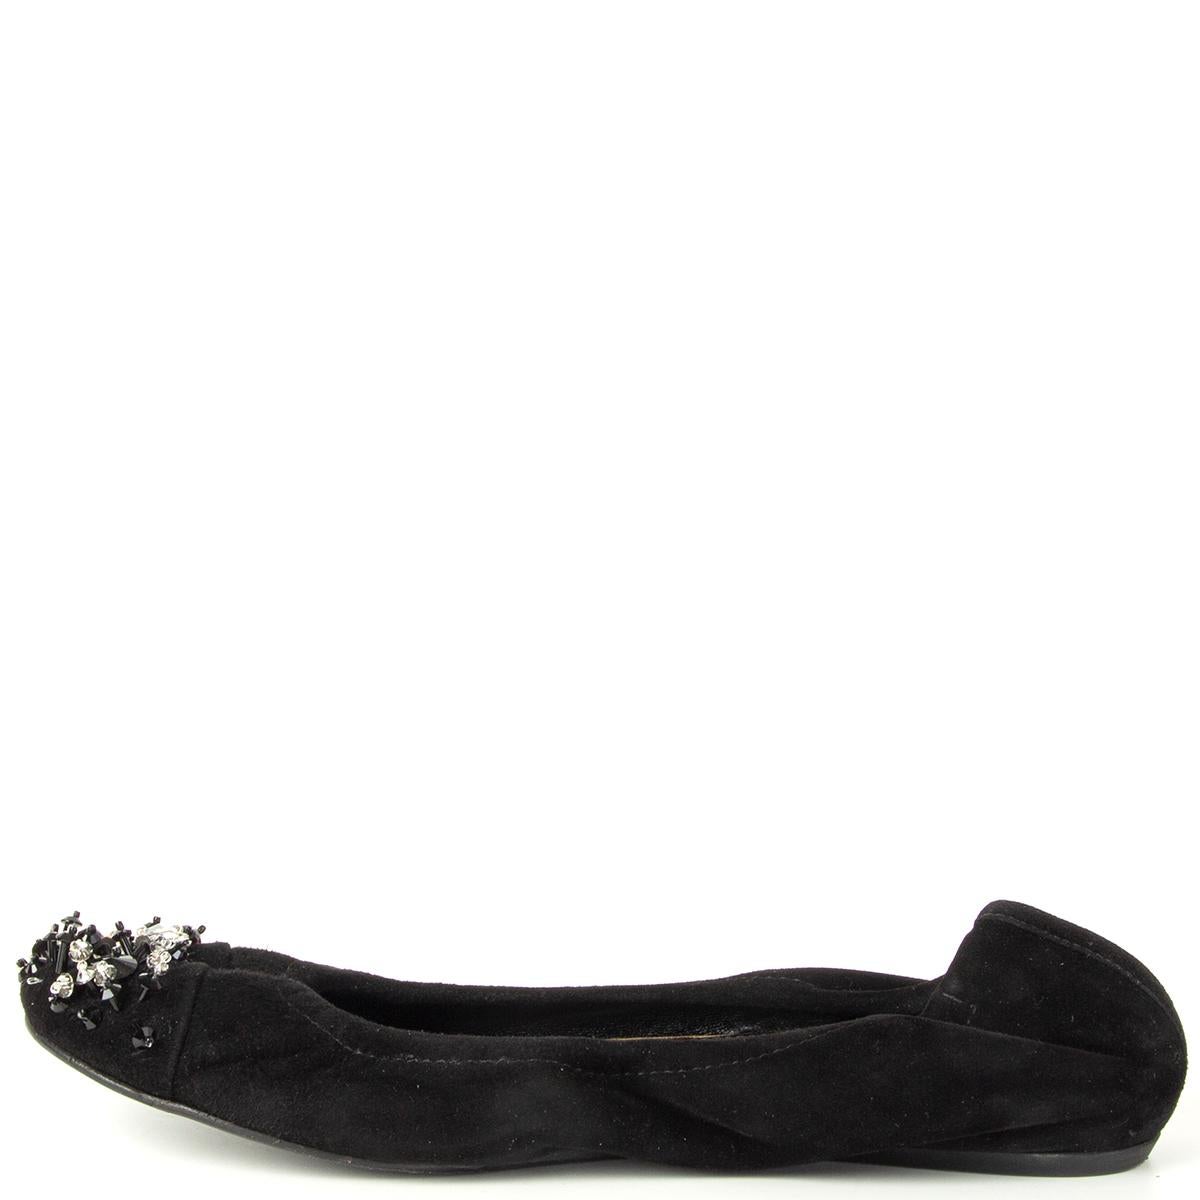 Black LANVIN black suede CRYSTAL EMBELLISHED Ballet Flats Shoes 37 For Sale